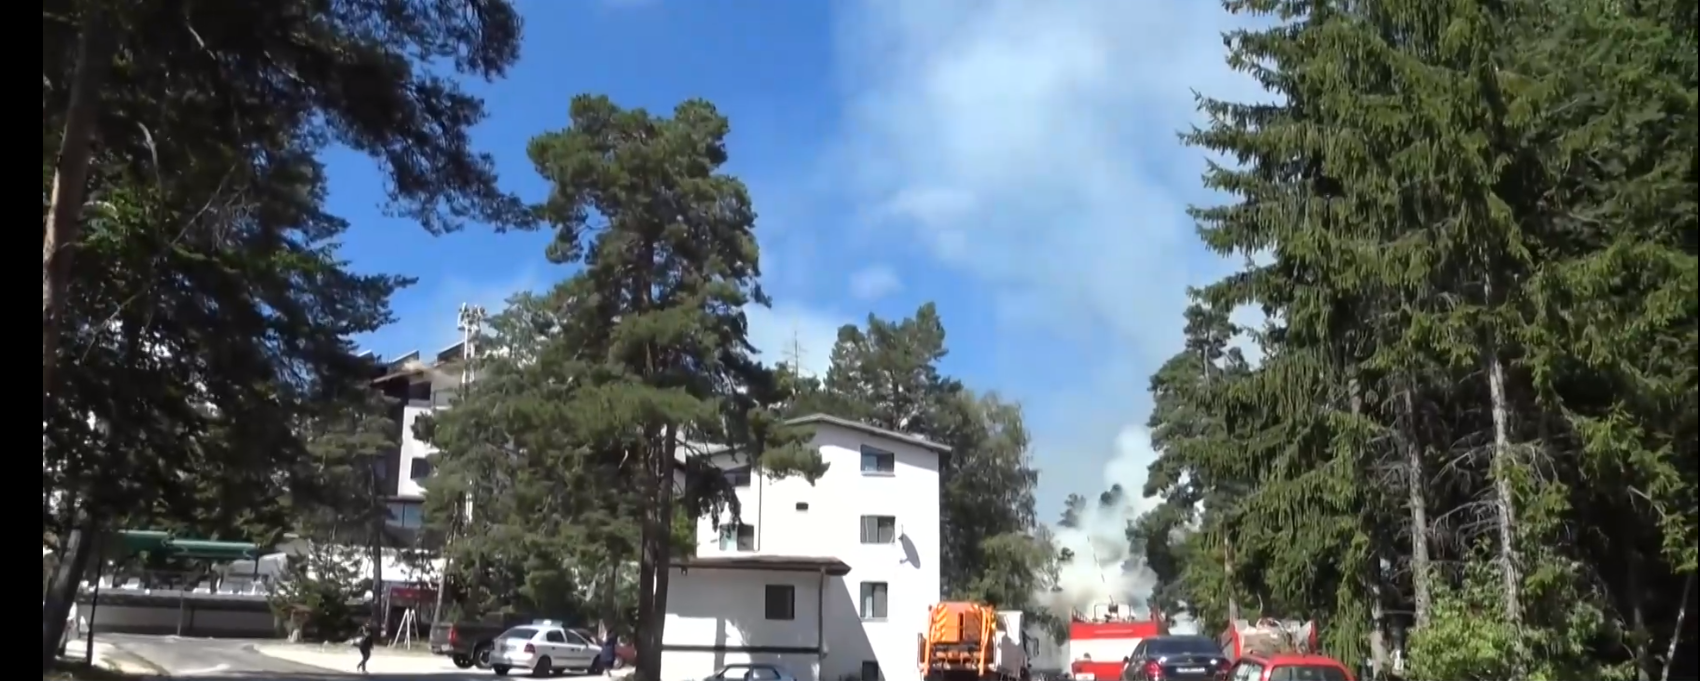 Близо 130 деца са евакуирани след пожар до хижа Здравец  Учениците от Добрич е трябвало